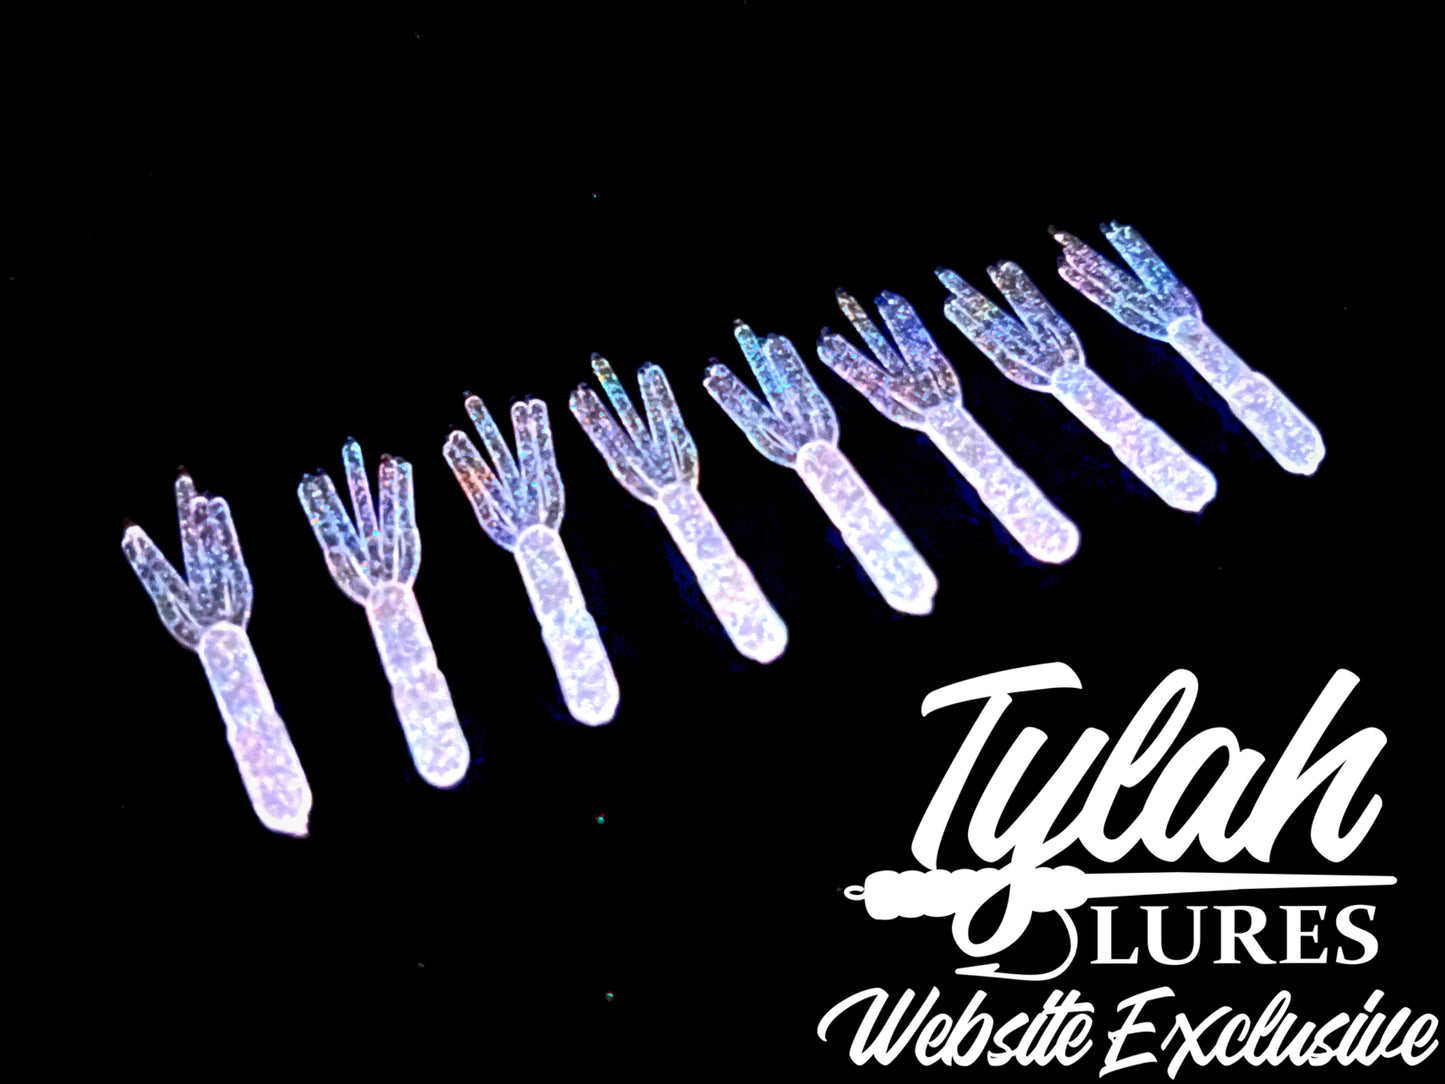 TylahLures Website Exclusive UV Firecracker Glow Shidasa 1in